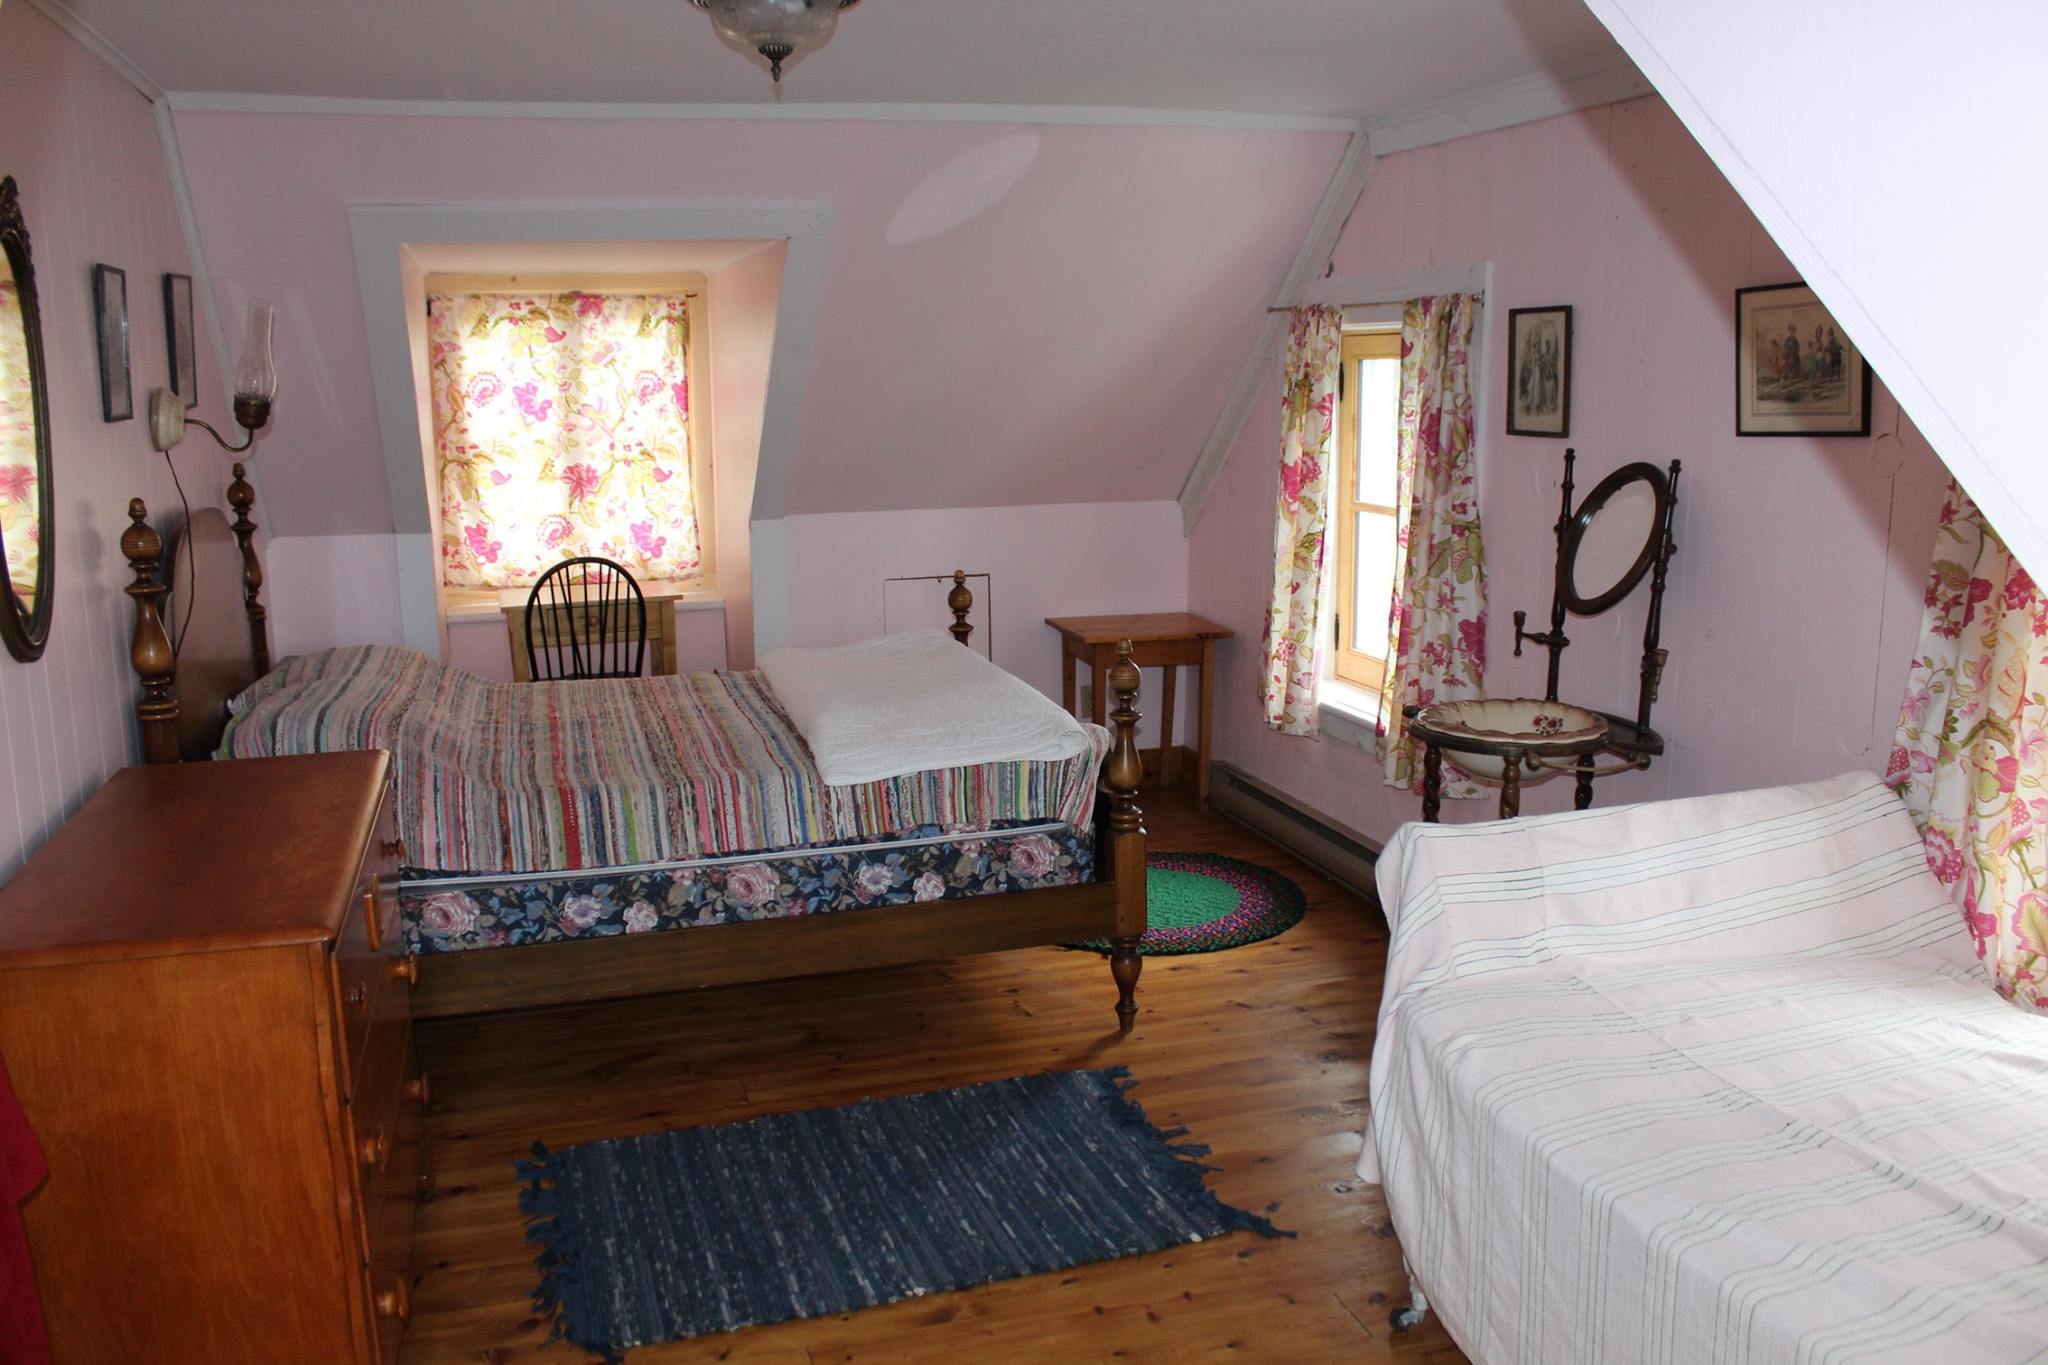 Photographie en couleurs d’une petite chambre meublée à l’ancienne.